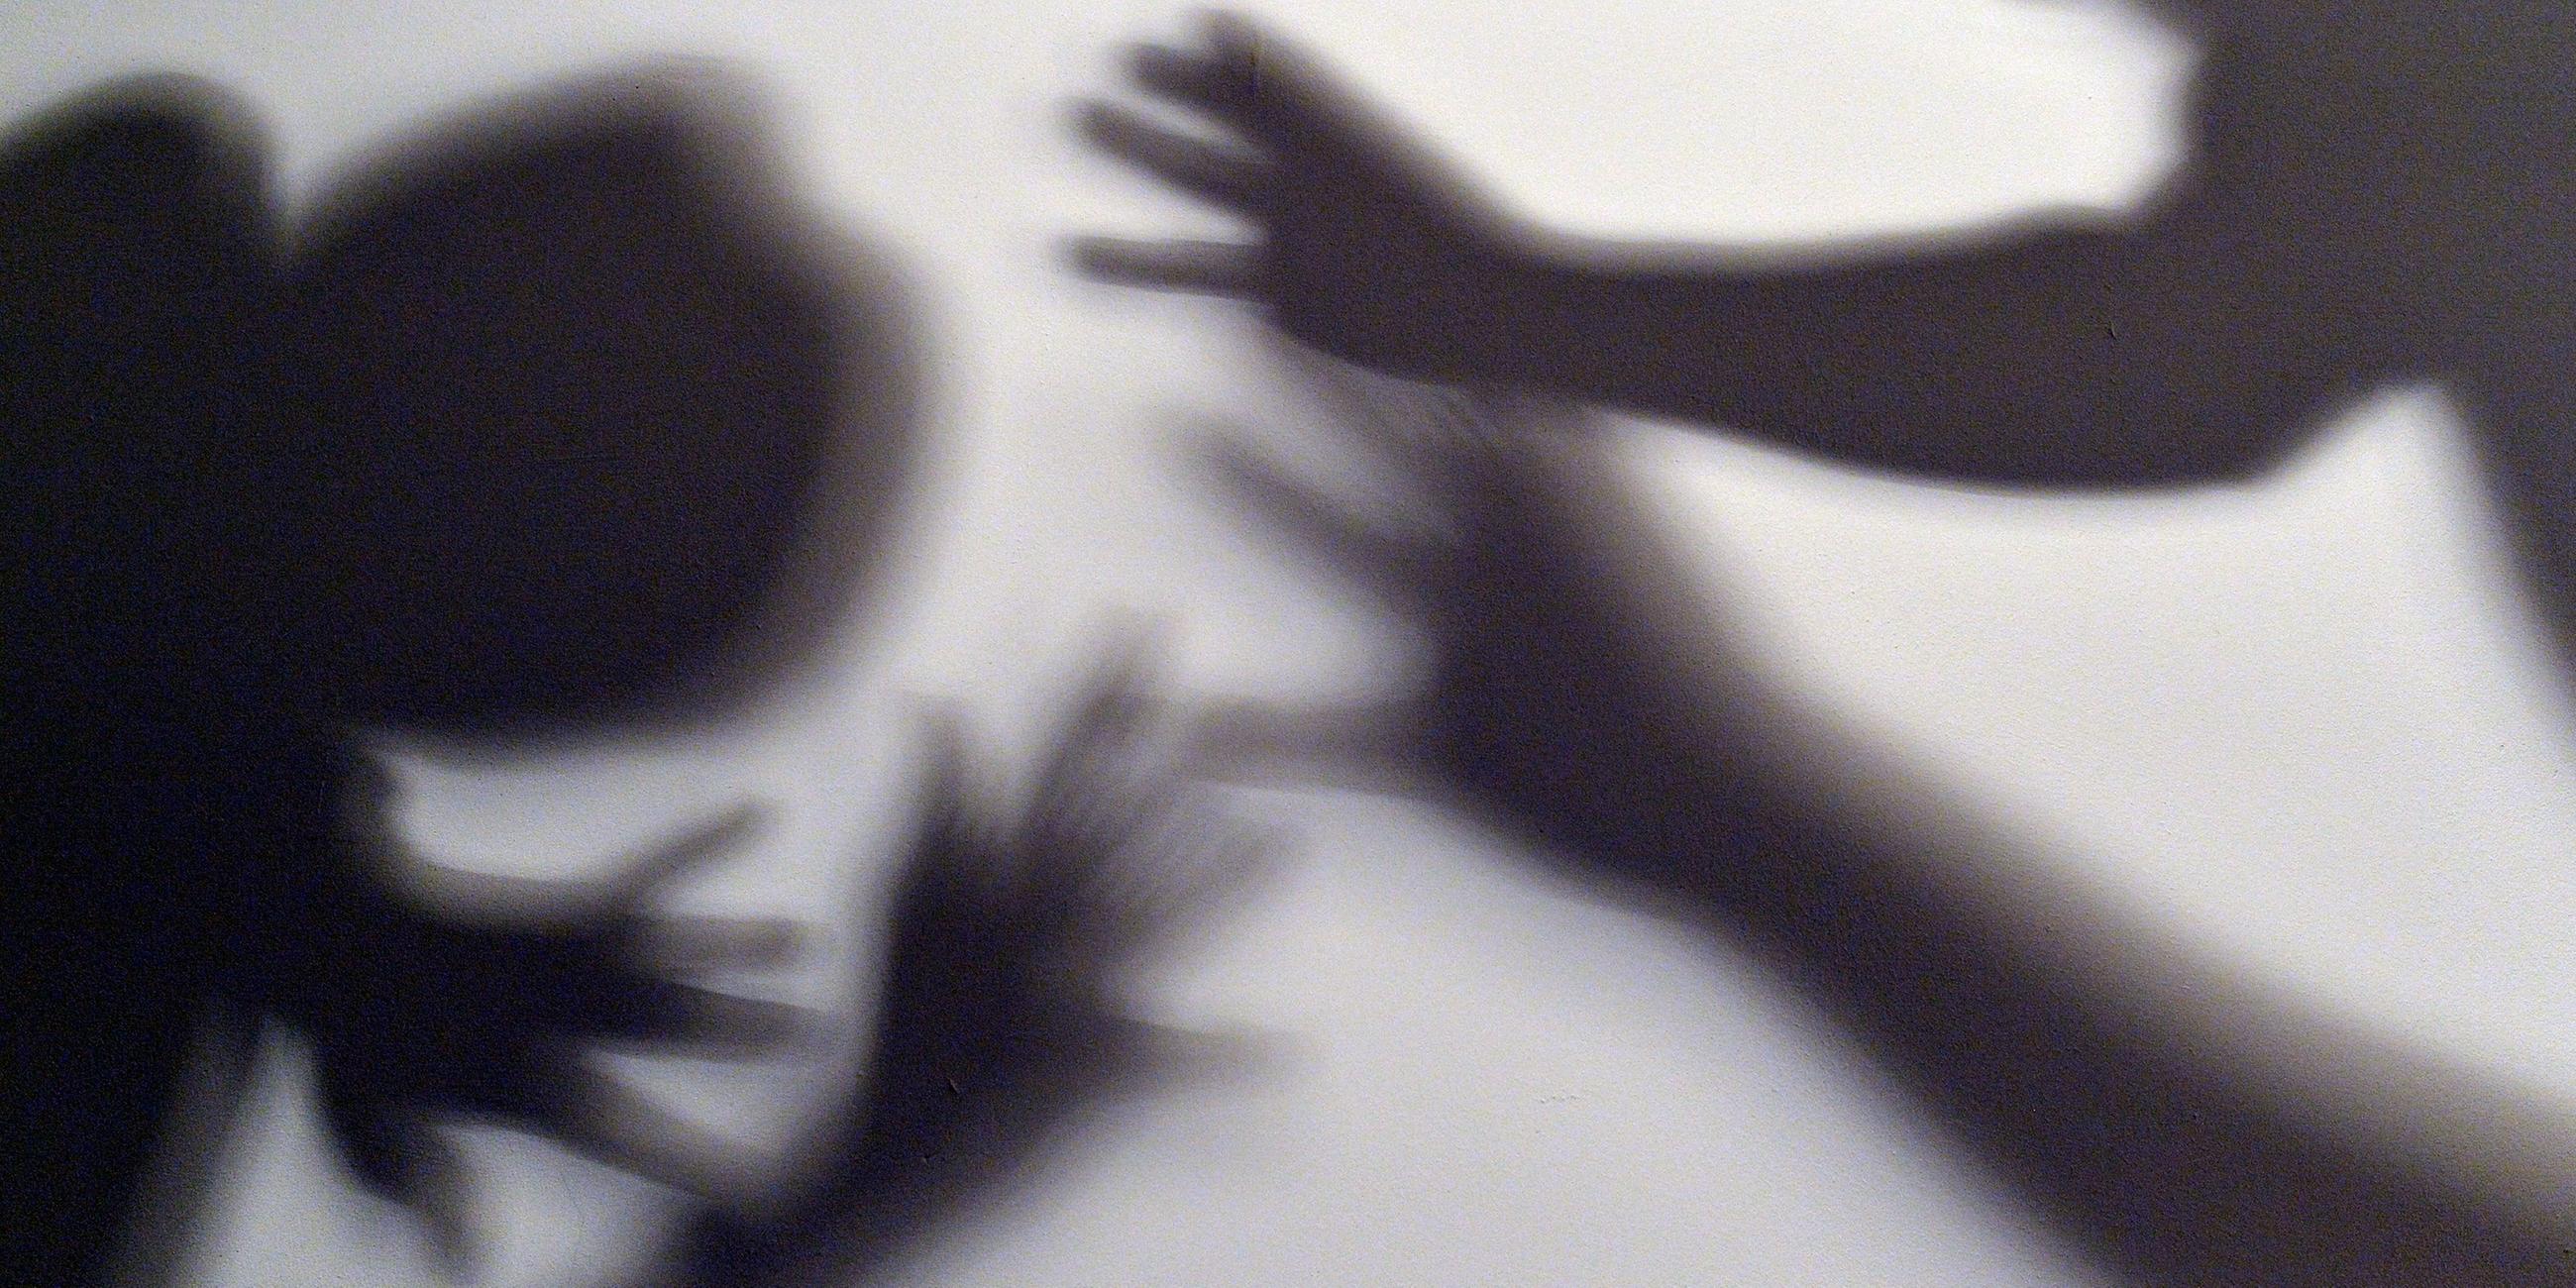 Schatten sollen symbolisieren, wie sich ein Kind gegen Gewalt eines Erwachsenen wehrt. (Symbolbild)